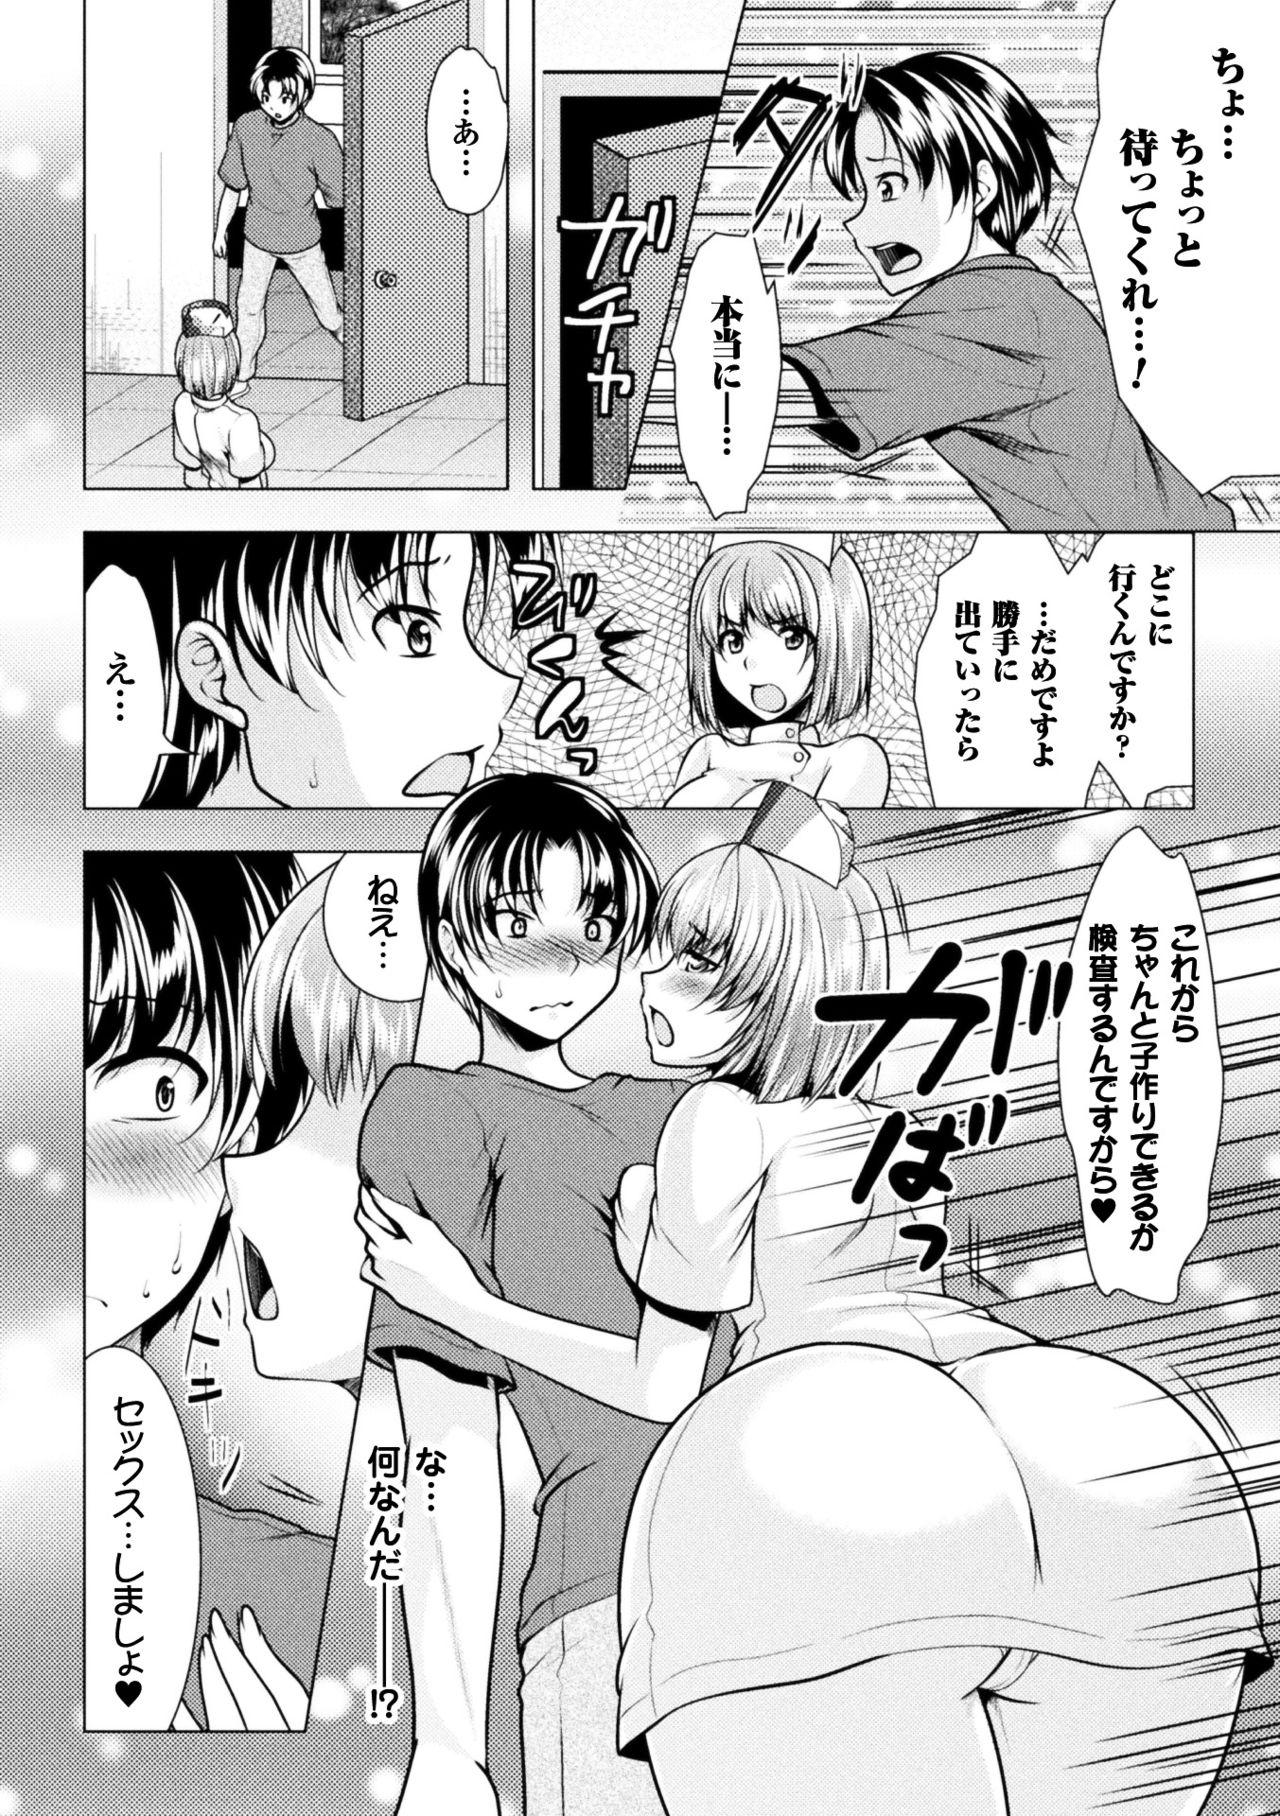 Gordita 2D Comic Magazine Onna dake no Sekai de Boku wa mou Dame kamo Shirenai Vol.2 Reverse - Page 8